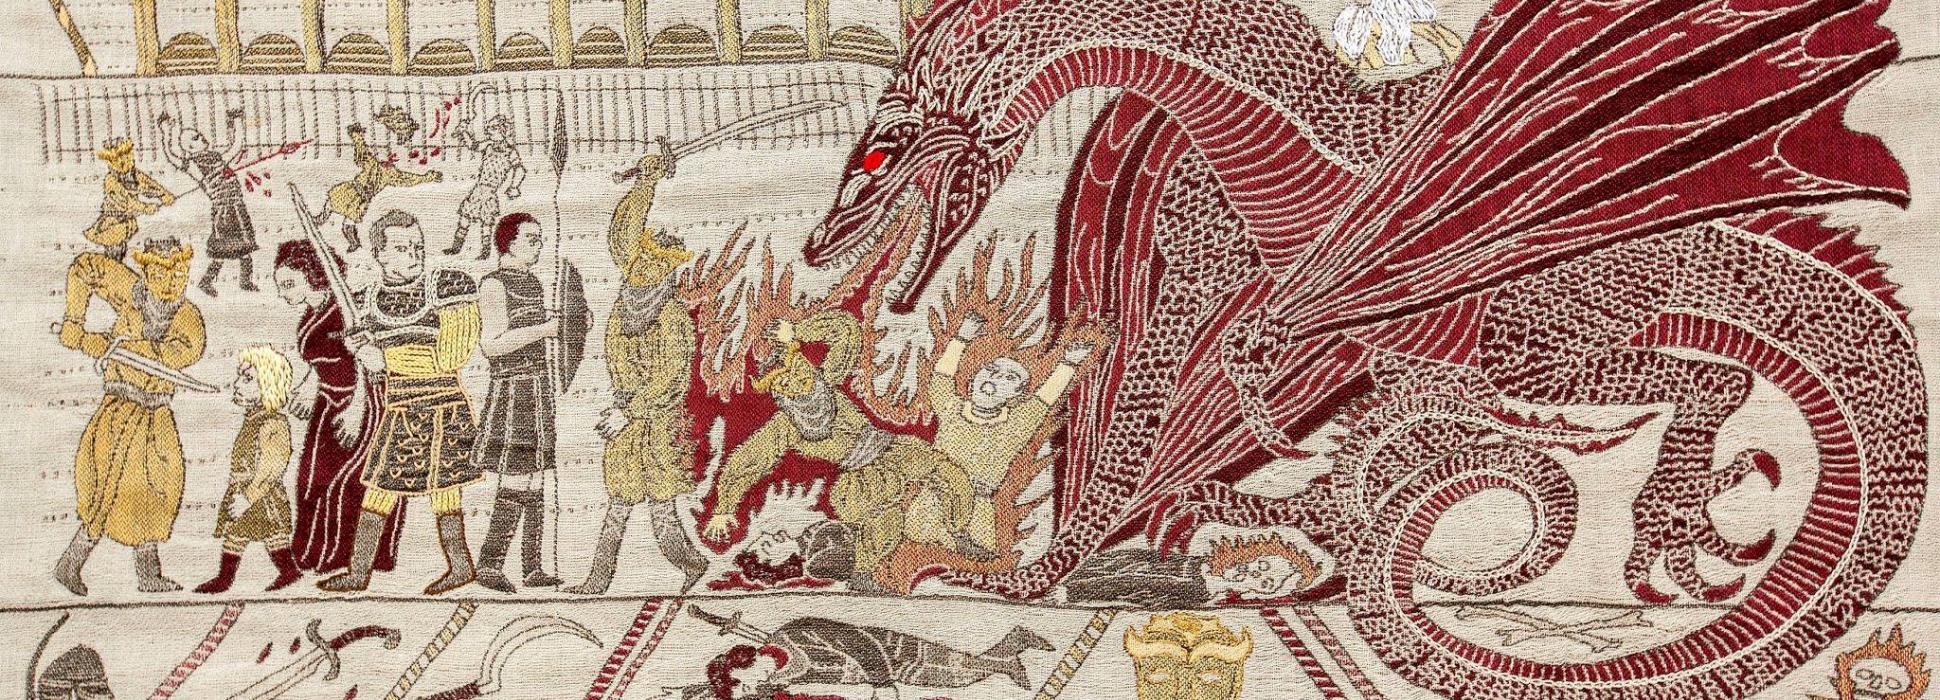 A Bayeux, l’Hôtel du Doyen expose une tapisserie sur le thème de Game of Thrones jusqu’au 31 décembre 2019